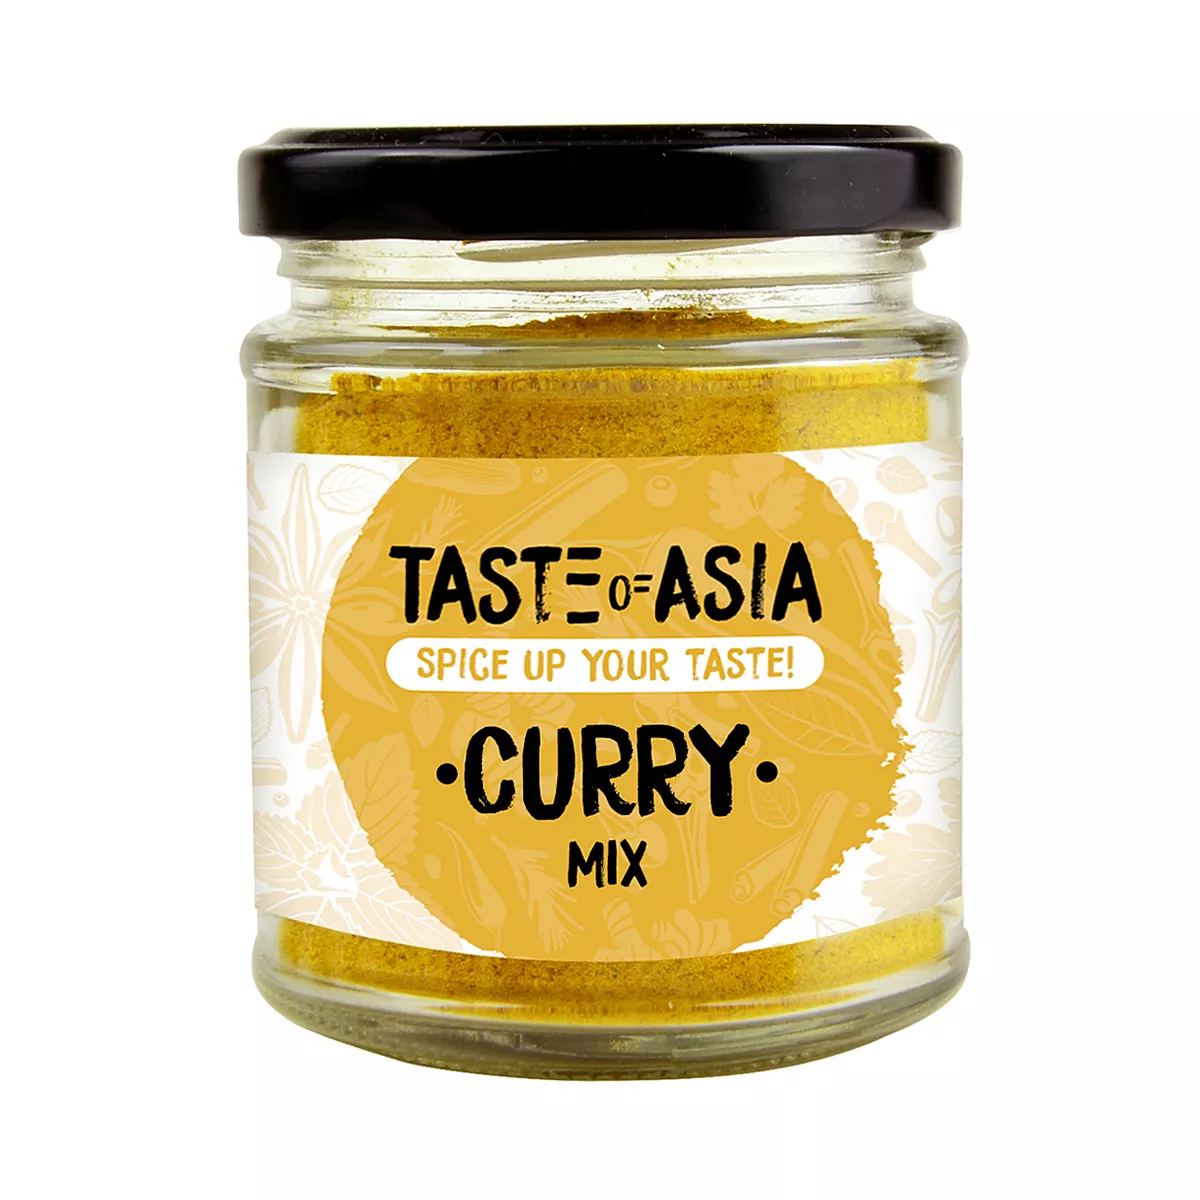 Curry Mix TOA 90g, [],asianfood.ro